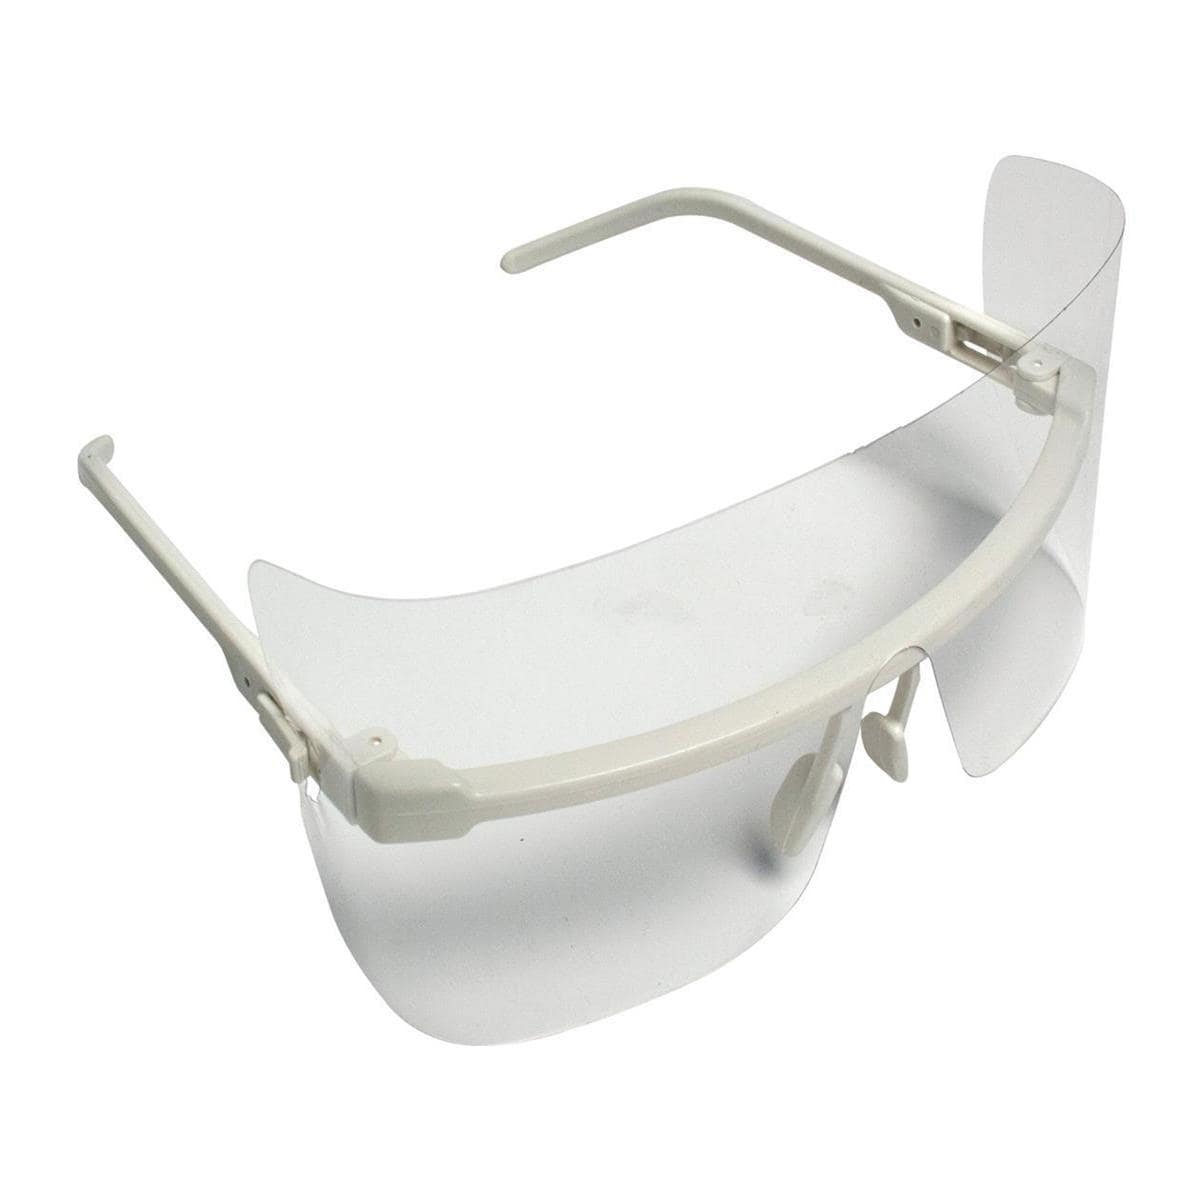 Cadre pour lunettes de protection - Set: contient 12 masques de protection du visage avec 1 cadre de support, small